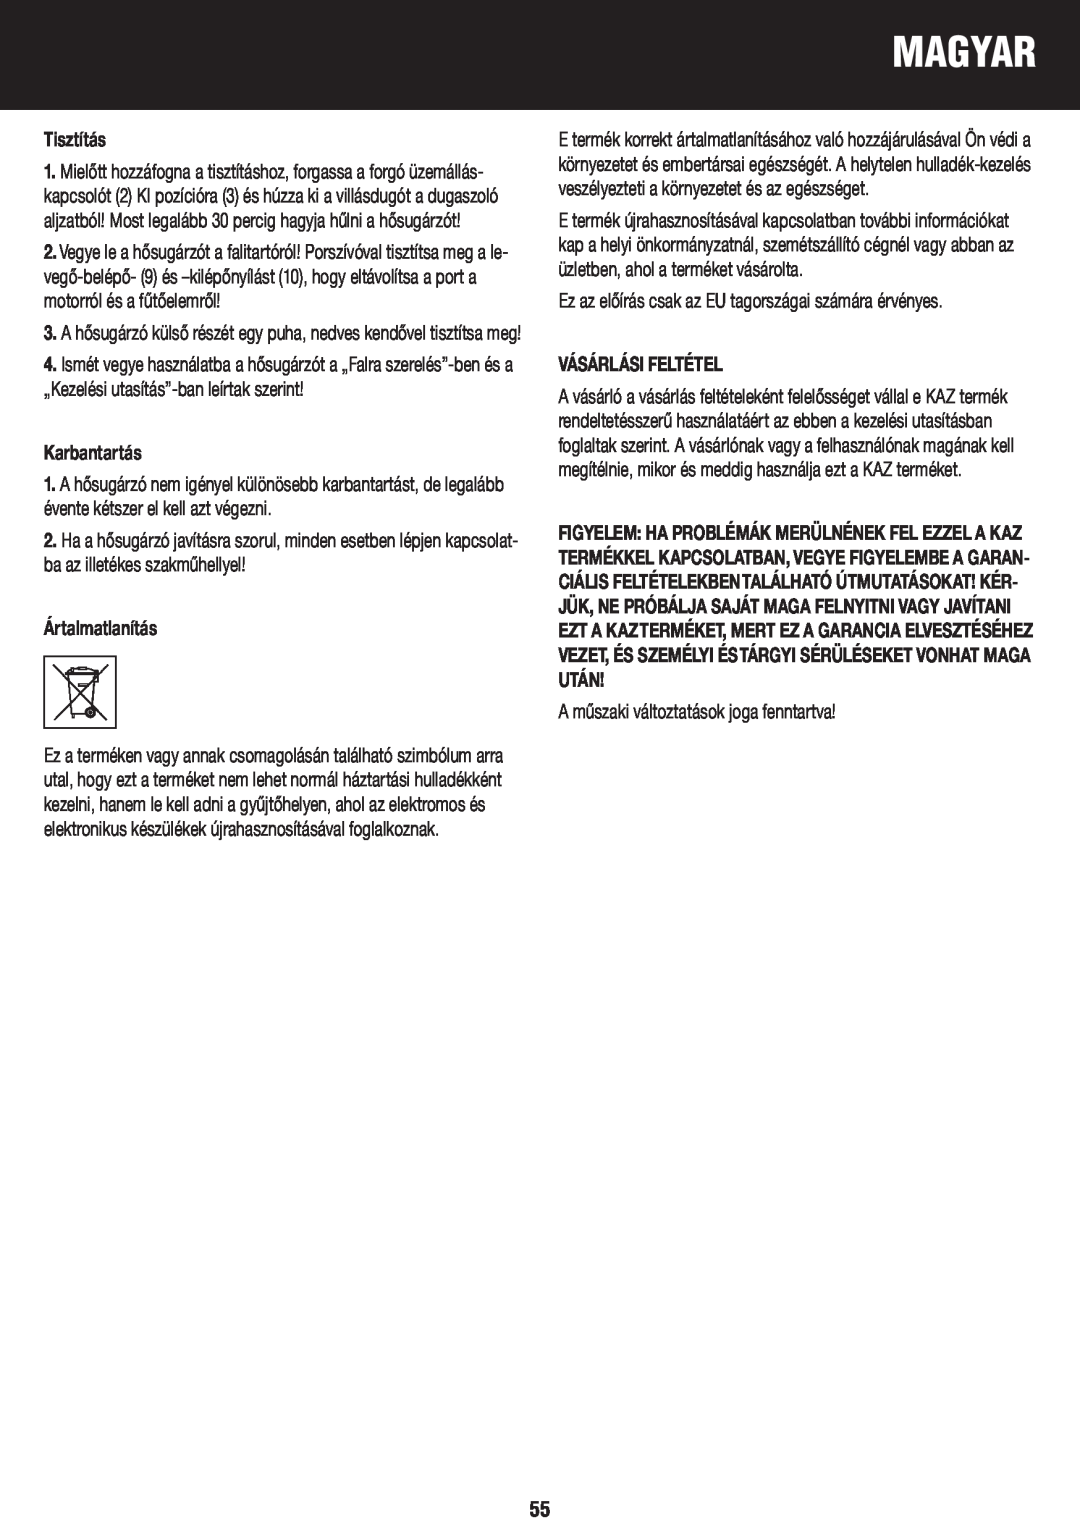 Honeywell BH-777FTE manual do utilizador Tisztítás, Karbantartás, Ártalmatlanítás, Vásárlási Feltétel, Magyar 